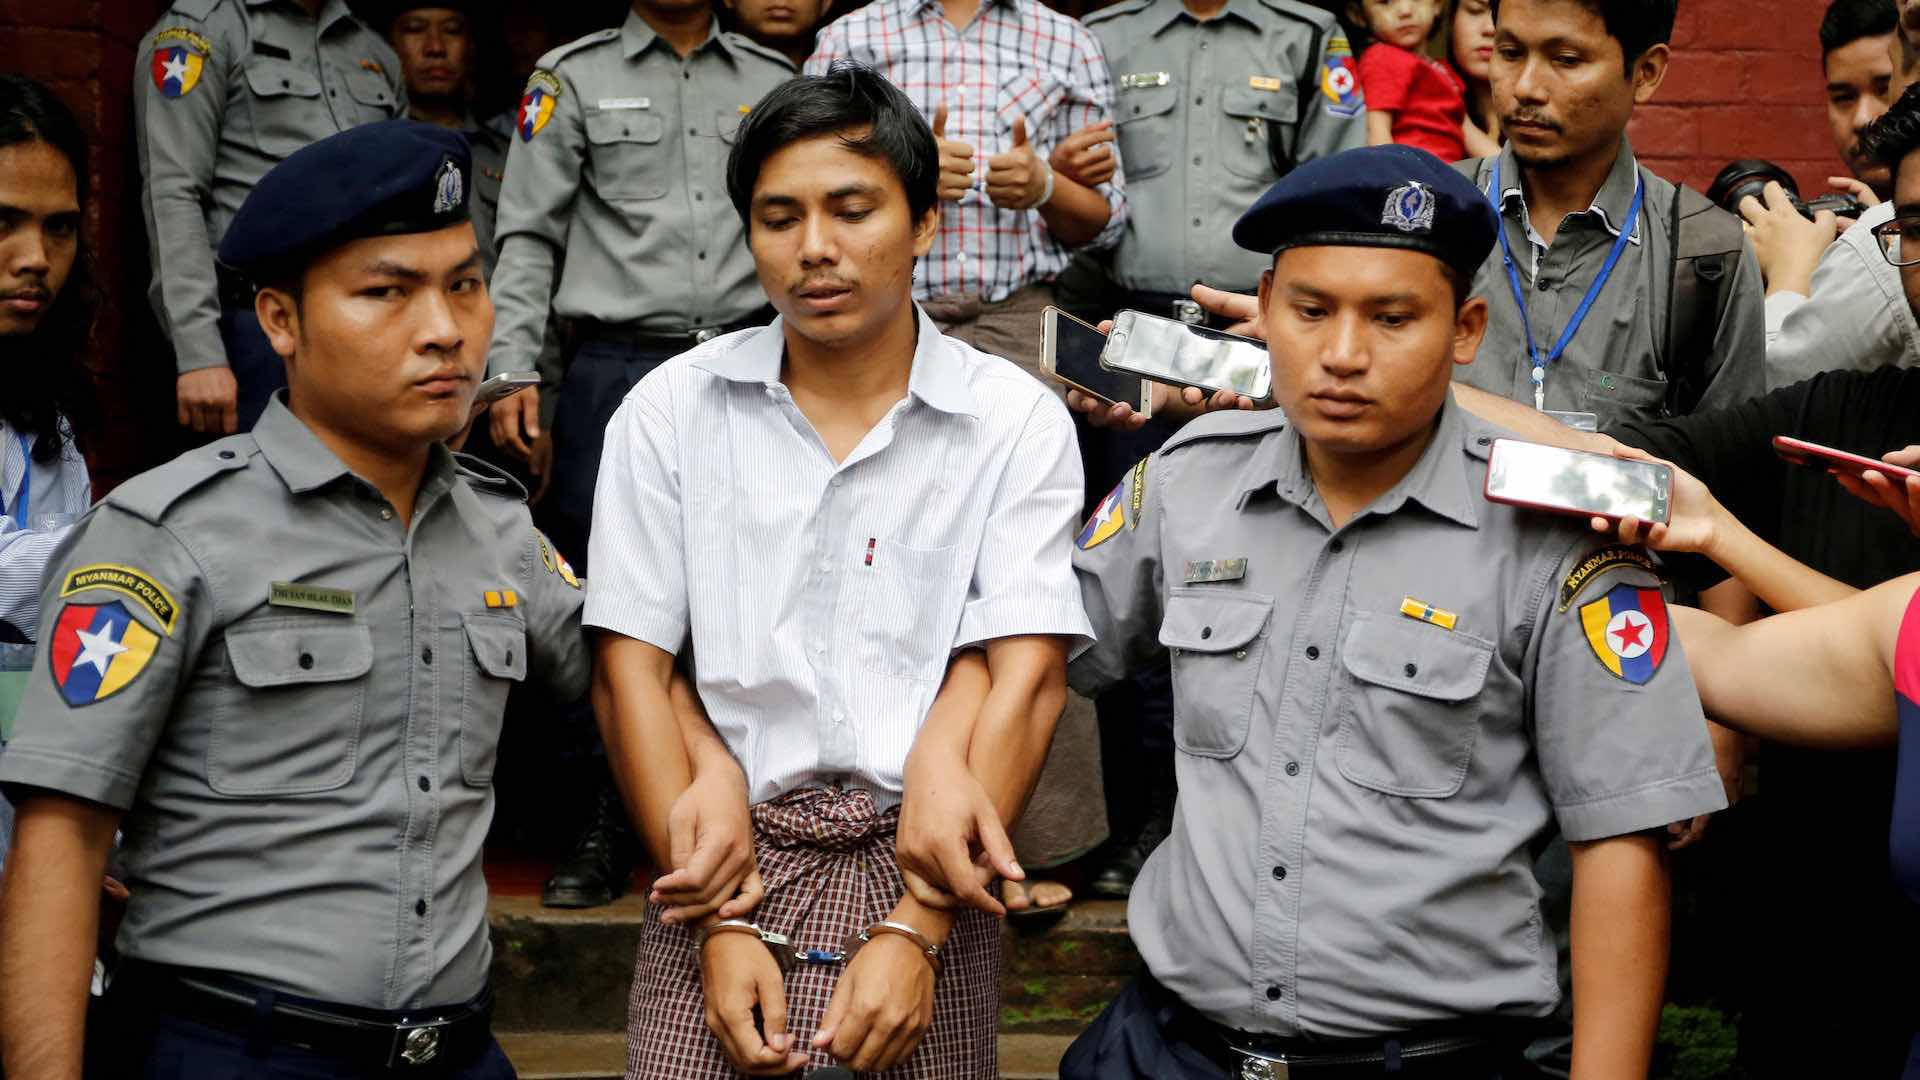 Los periodistas birmanos que investigaron la matanza rohingya cumplen un año en prisión